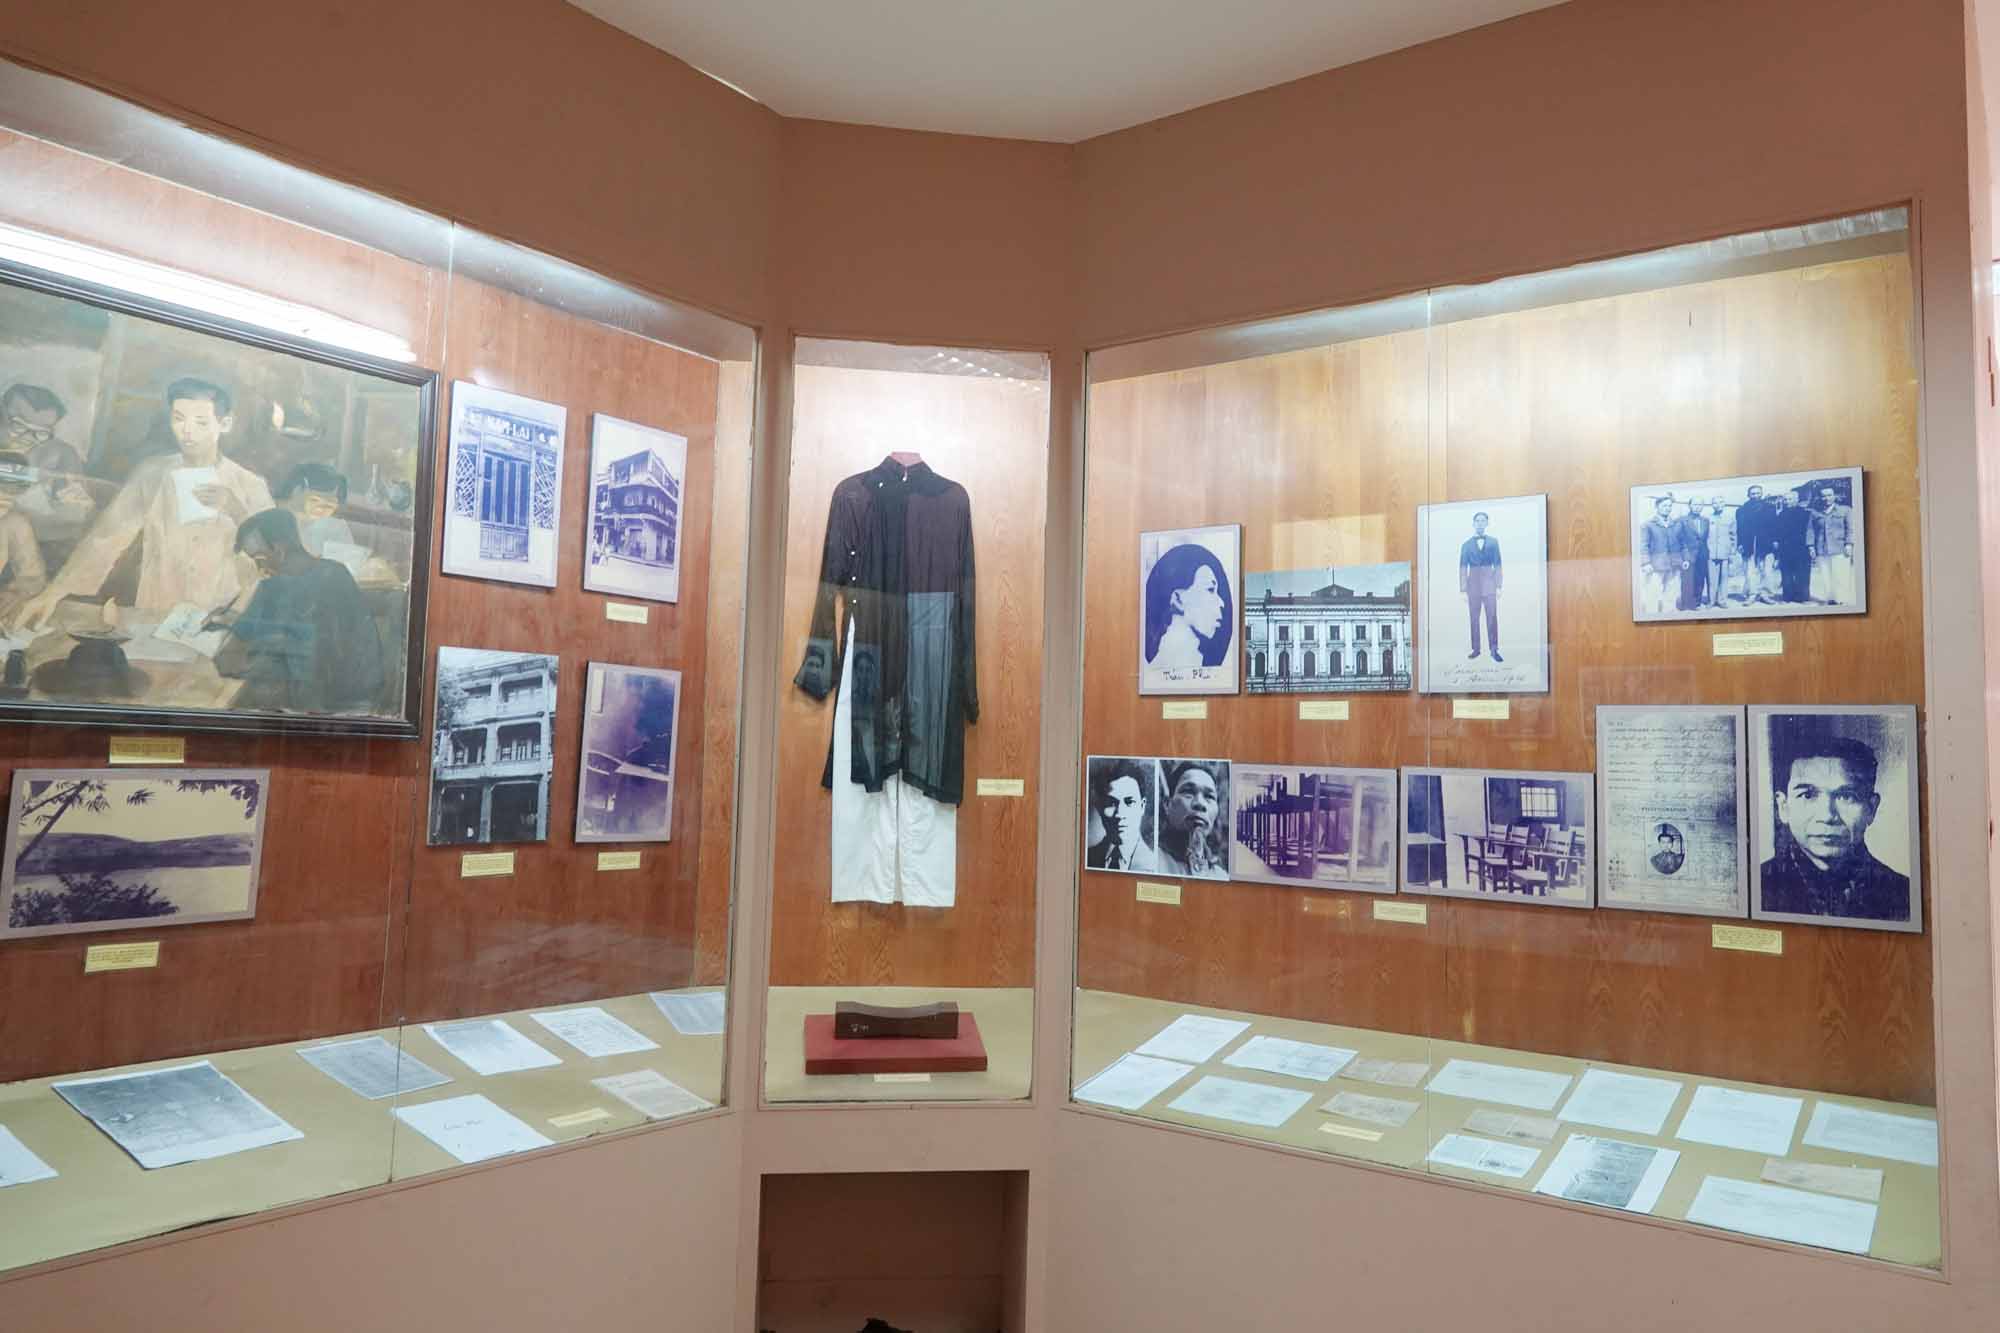 Góc trưng bày một số hiện vật trong nhà trưng bày lưu niệm cố Tổng Bí thư Trần Phú. Ảnh: Trần Tuấn.